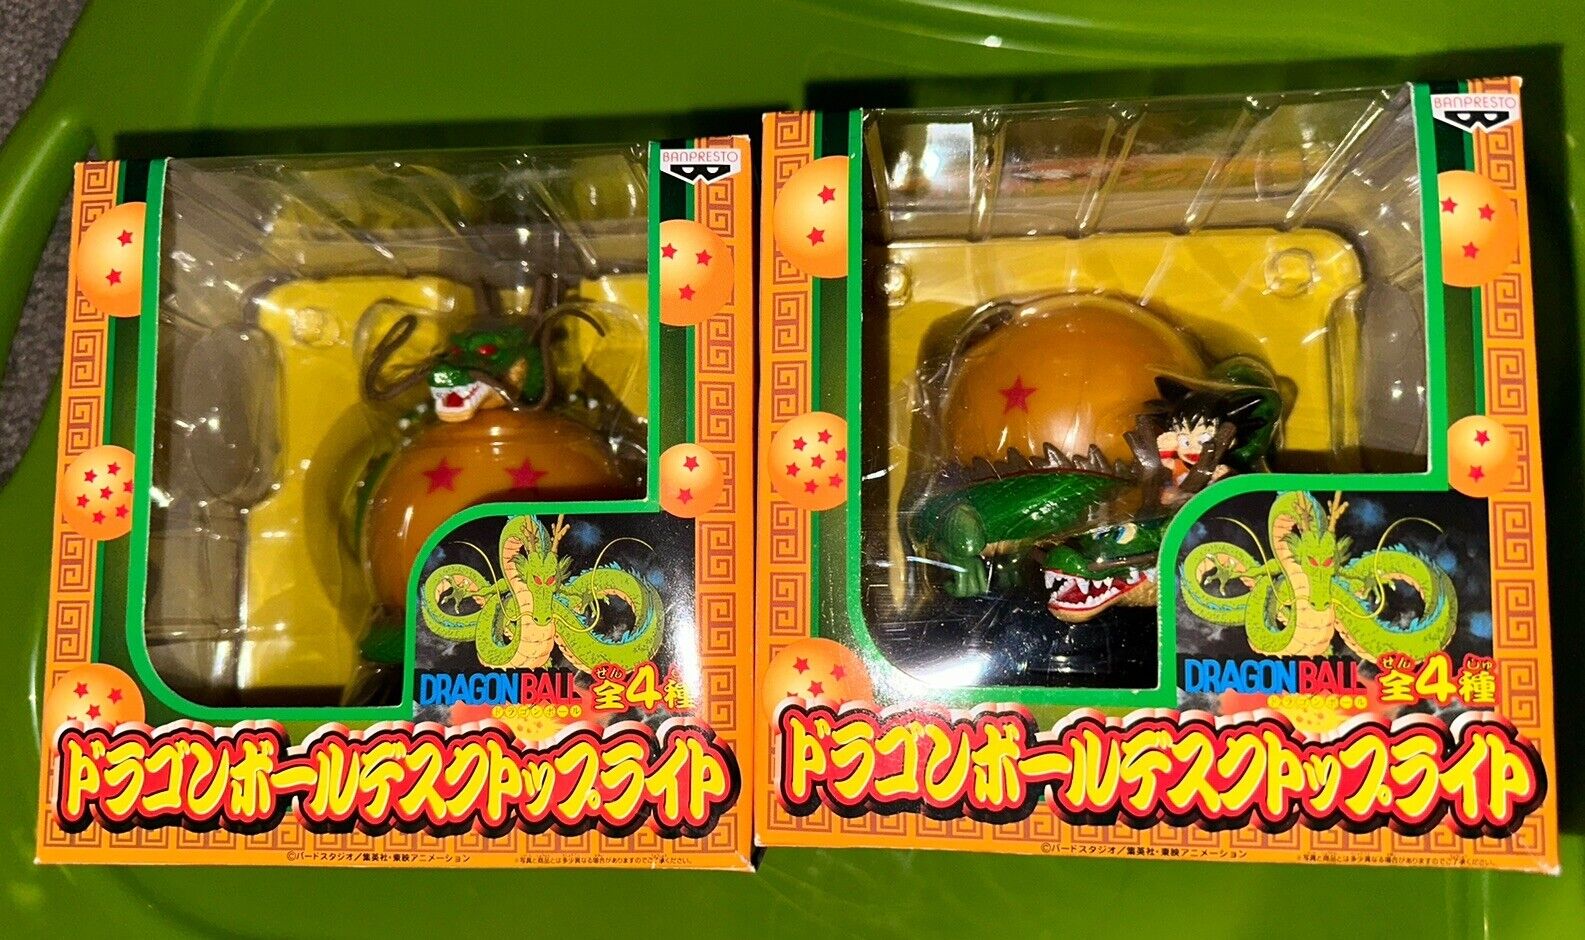 2 Dragon Ball Z Desktop Light Lamps Goku & Shenron Banpresto Vintage 2004 New